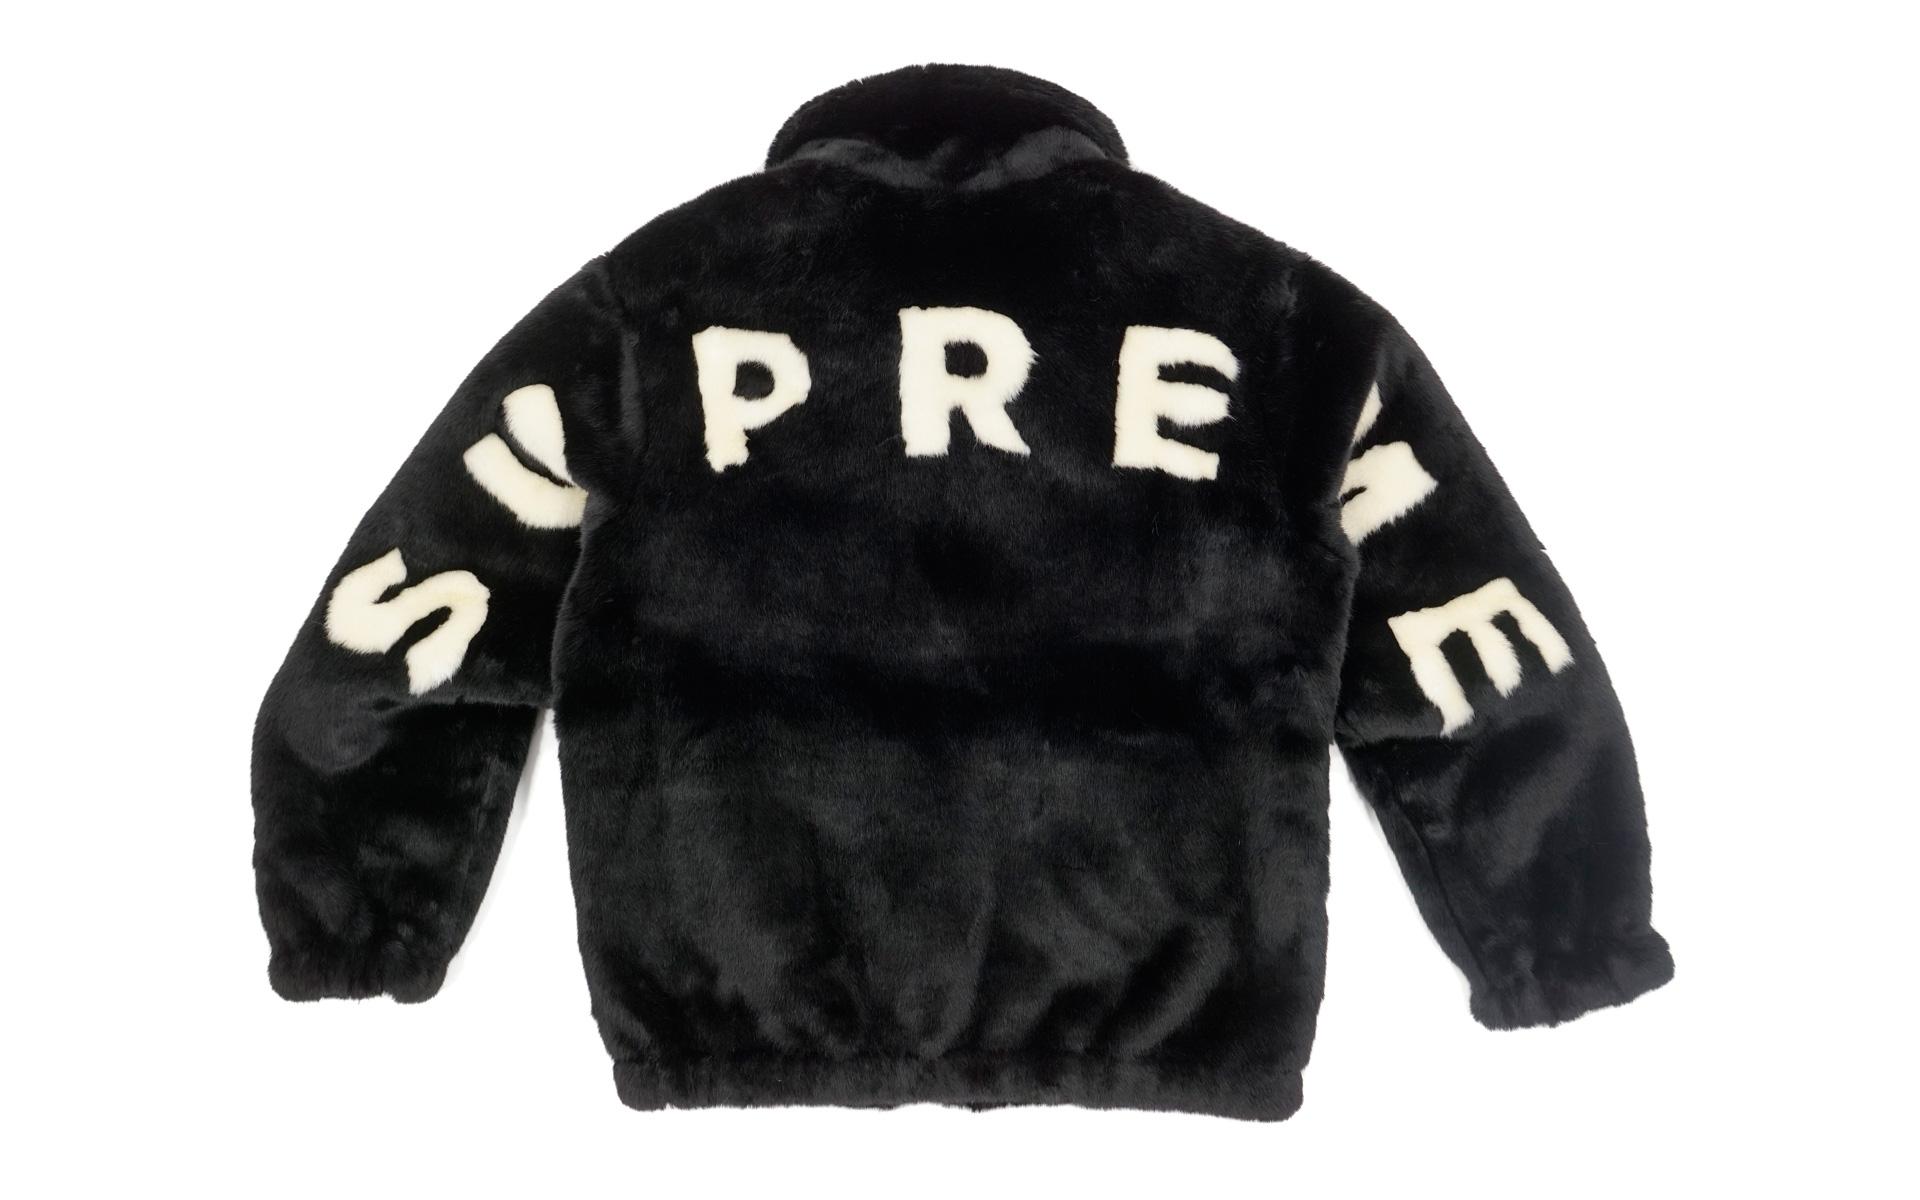 supreme black jacket